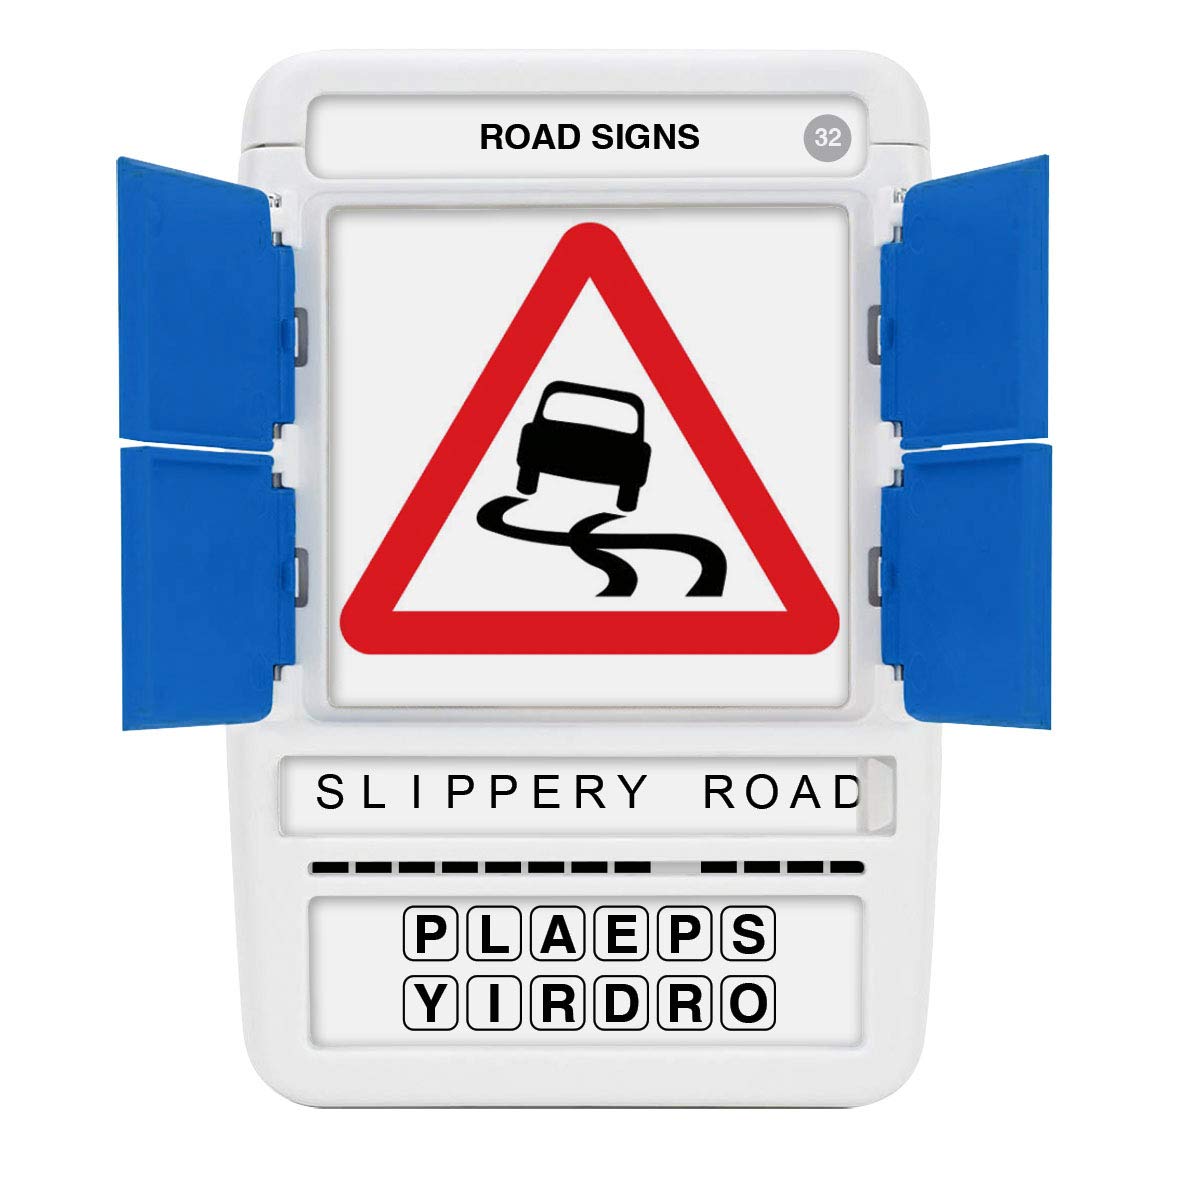 100 PICS Road Signs UK - Zippigames